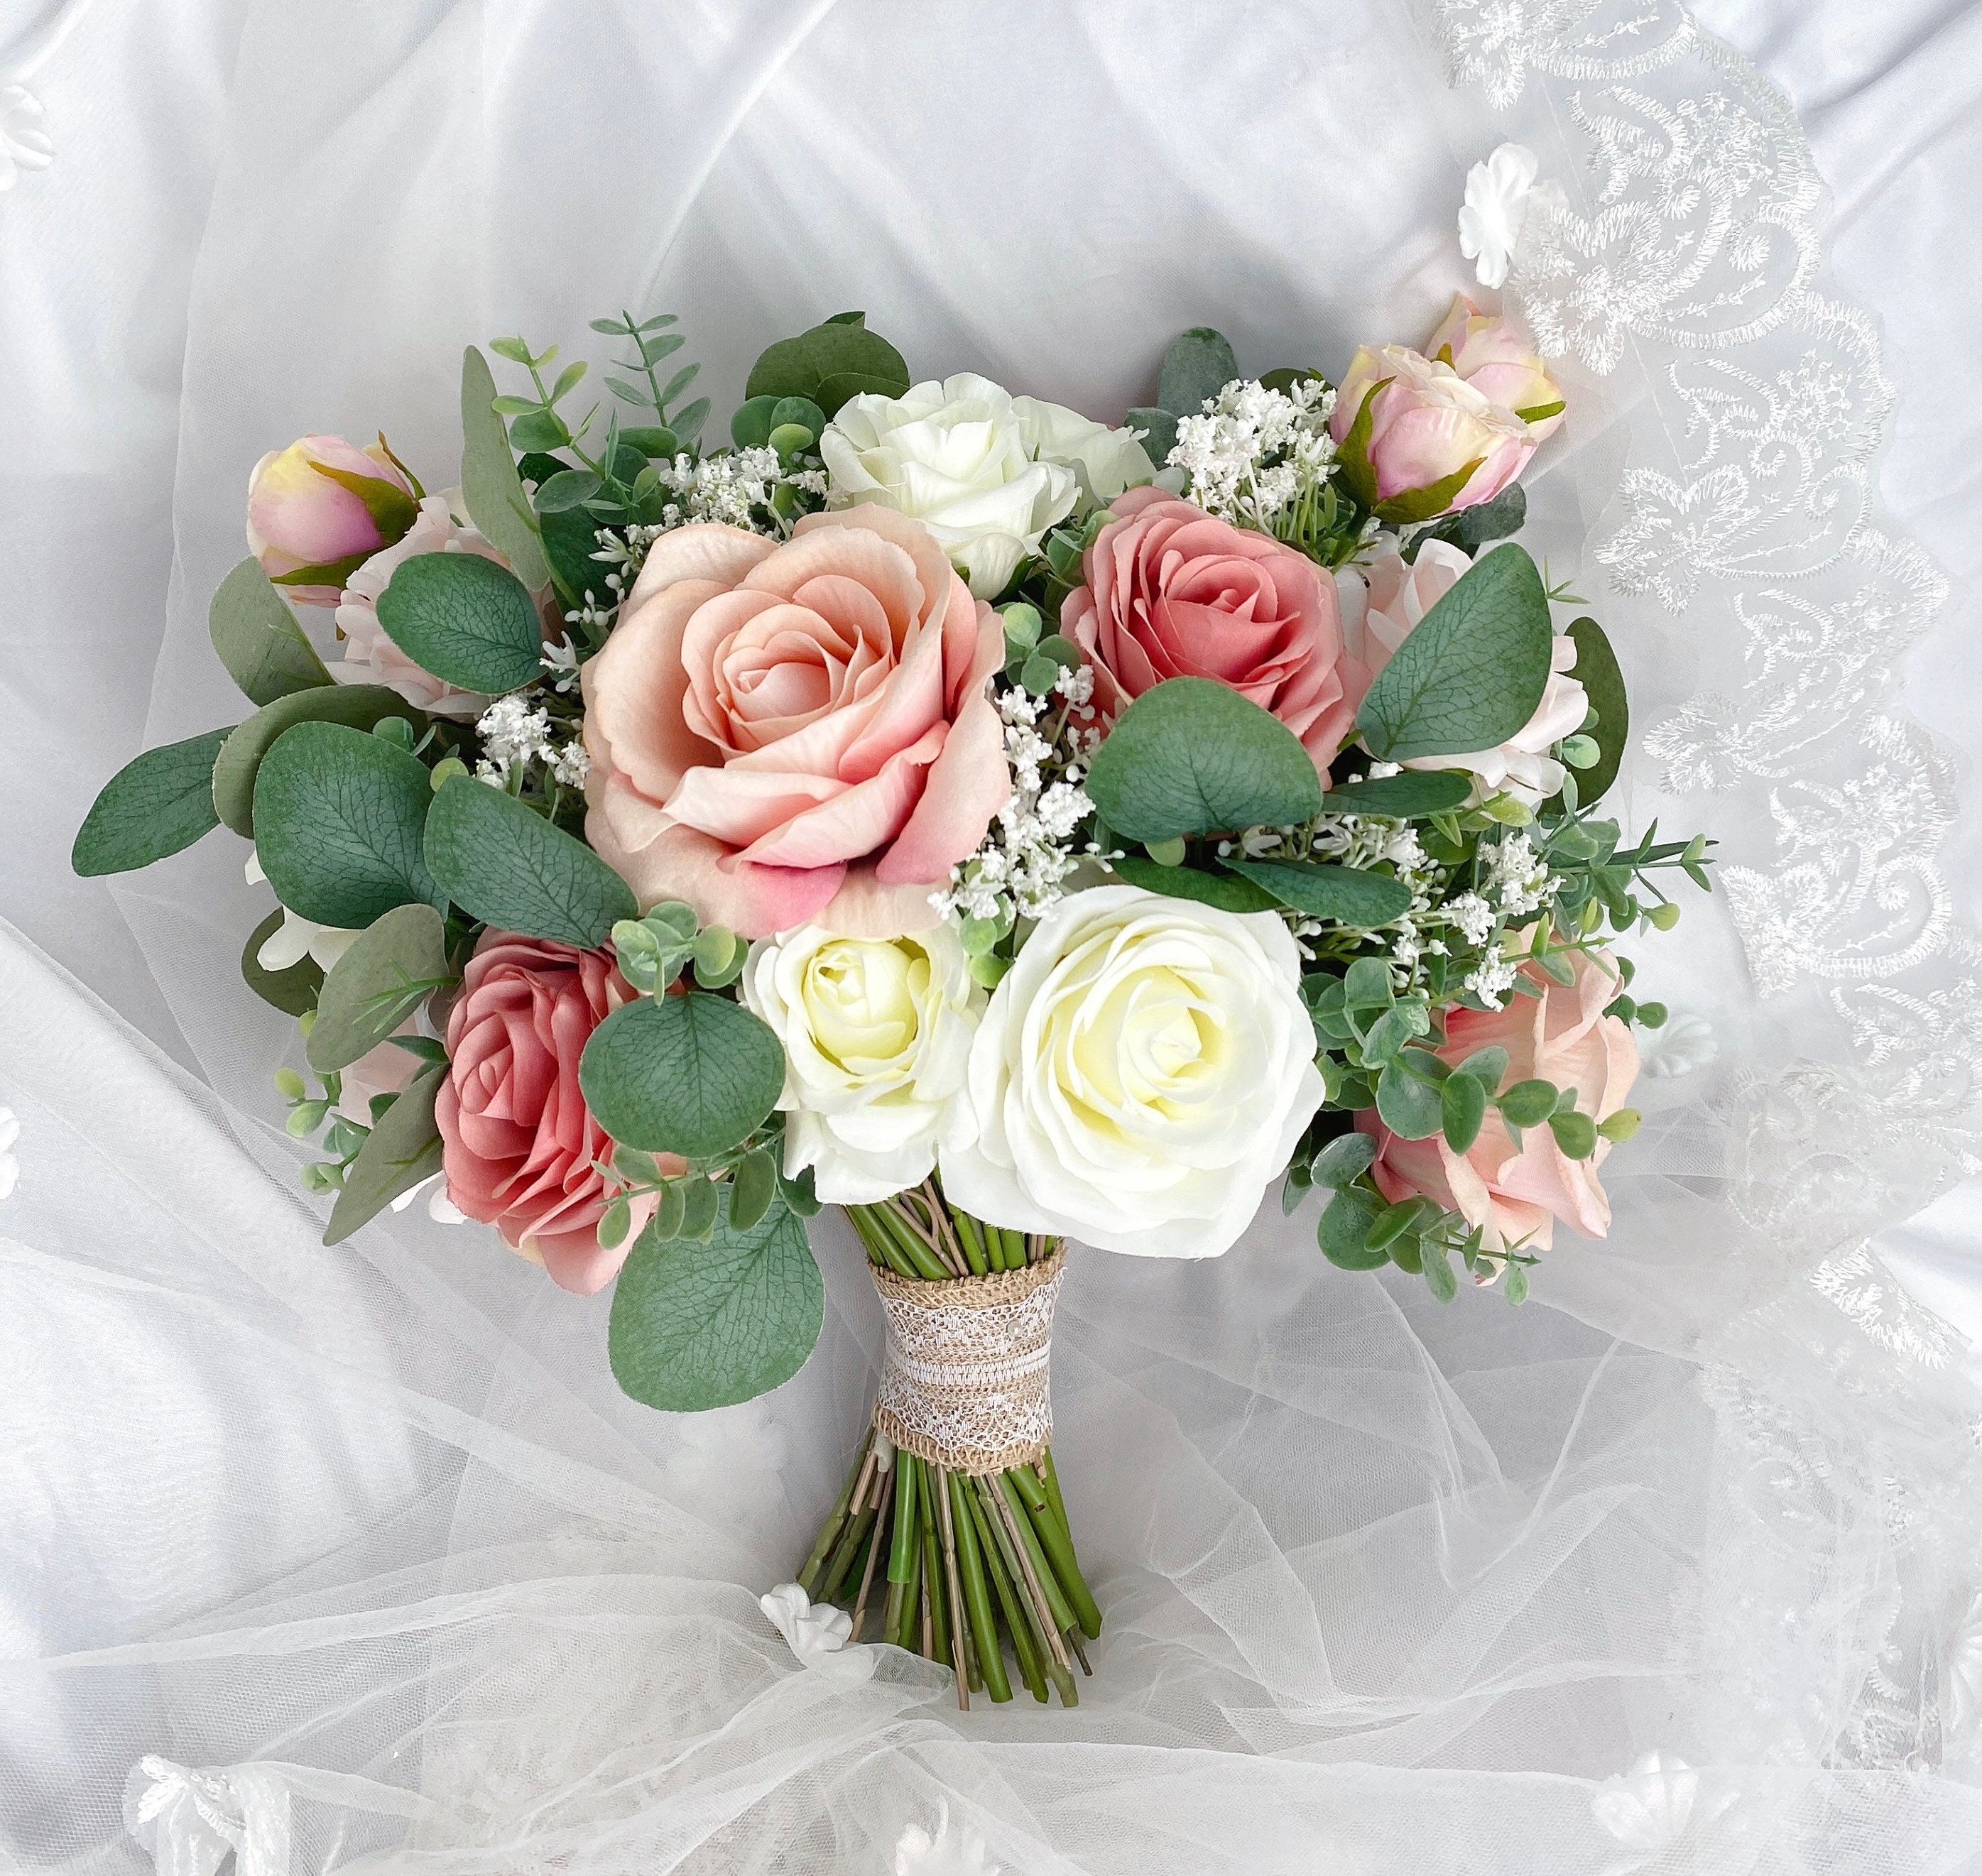 Wedding Bouquet dusty Roseblush Pink White Cream rose - Etsy UK